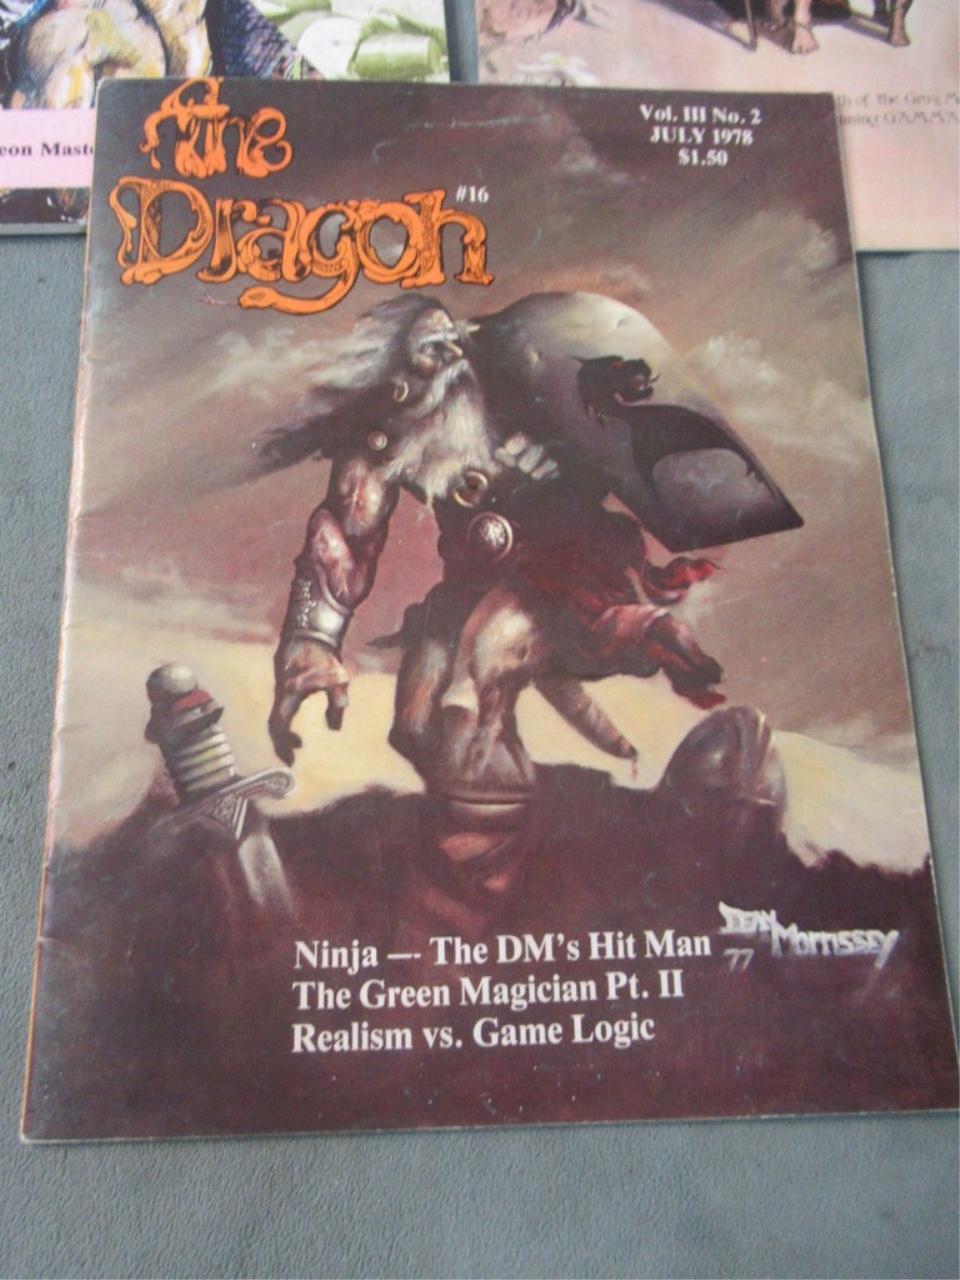 The Dragon #16, 18, & 22 - Vintage D&D